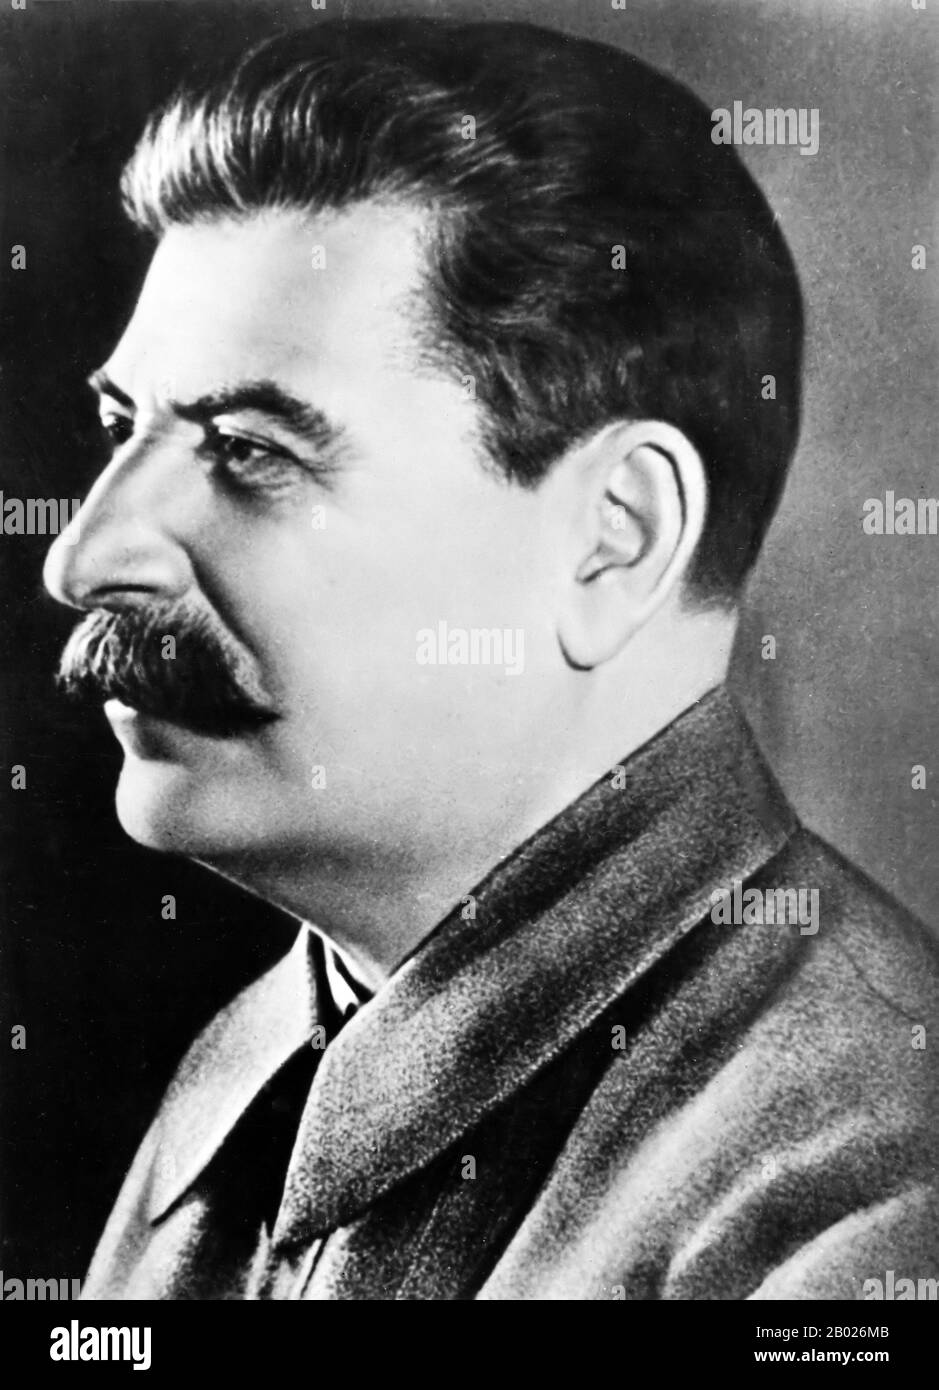 Joseph Vissarionovich Stalin (Stalin, 18 dicembre 1878 – 5 marzo 1953) è stato il primo segretario generale del Partito comunista del Comitato Centrale dell'Unione Sovietica dal 1922 alla sua morte nel 1953. Mentre formalmente l'ufficio del Segretario Generale era elettivo e non era inizialmente considerato come la posizione di vertice nello stato sovietico, dopo la morte di Vladimir Lenin nel 1924, Stalin riuscì a consolidare sempre più potere nelle sue mani, mettendo gradualmente tutti i gruppi di opposizione all'interno del partito. L'idea di socialismo di Stalin in un paese divenne la linea principale della politica sovietica. Dominò l'Unione Sovietica Foto Stock